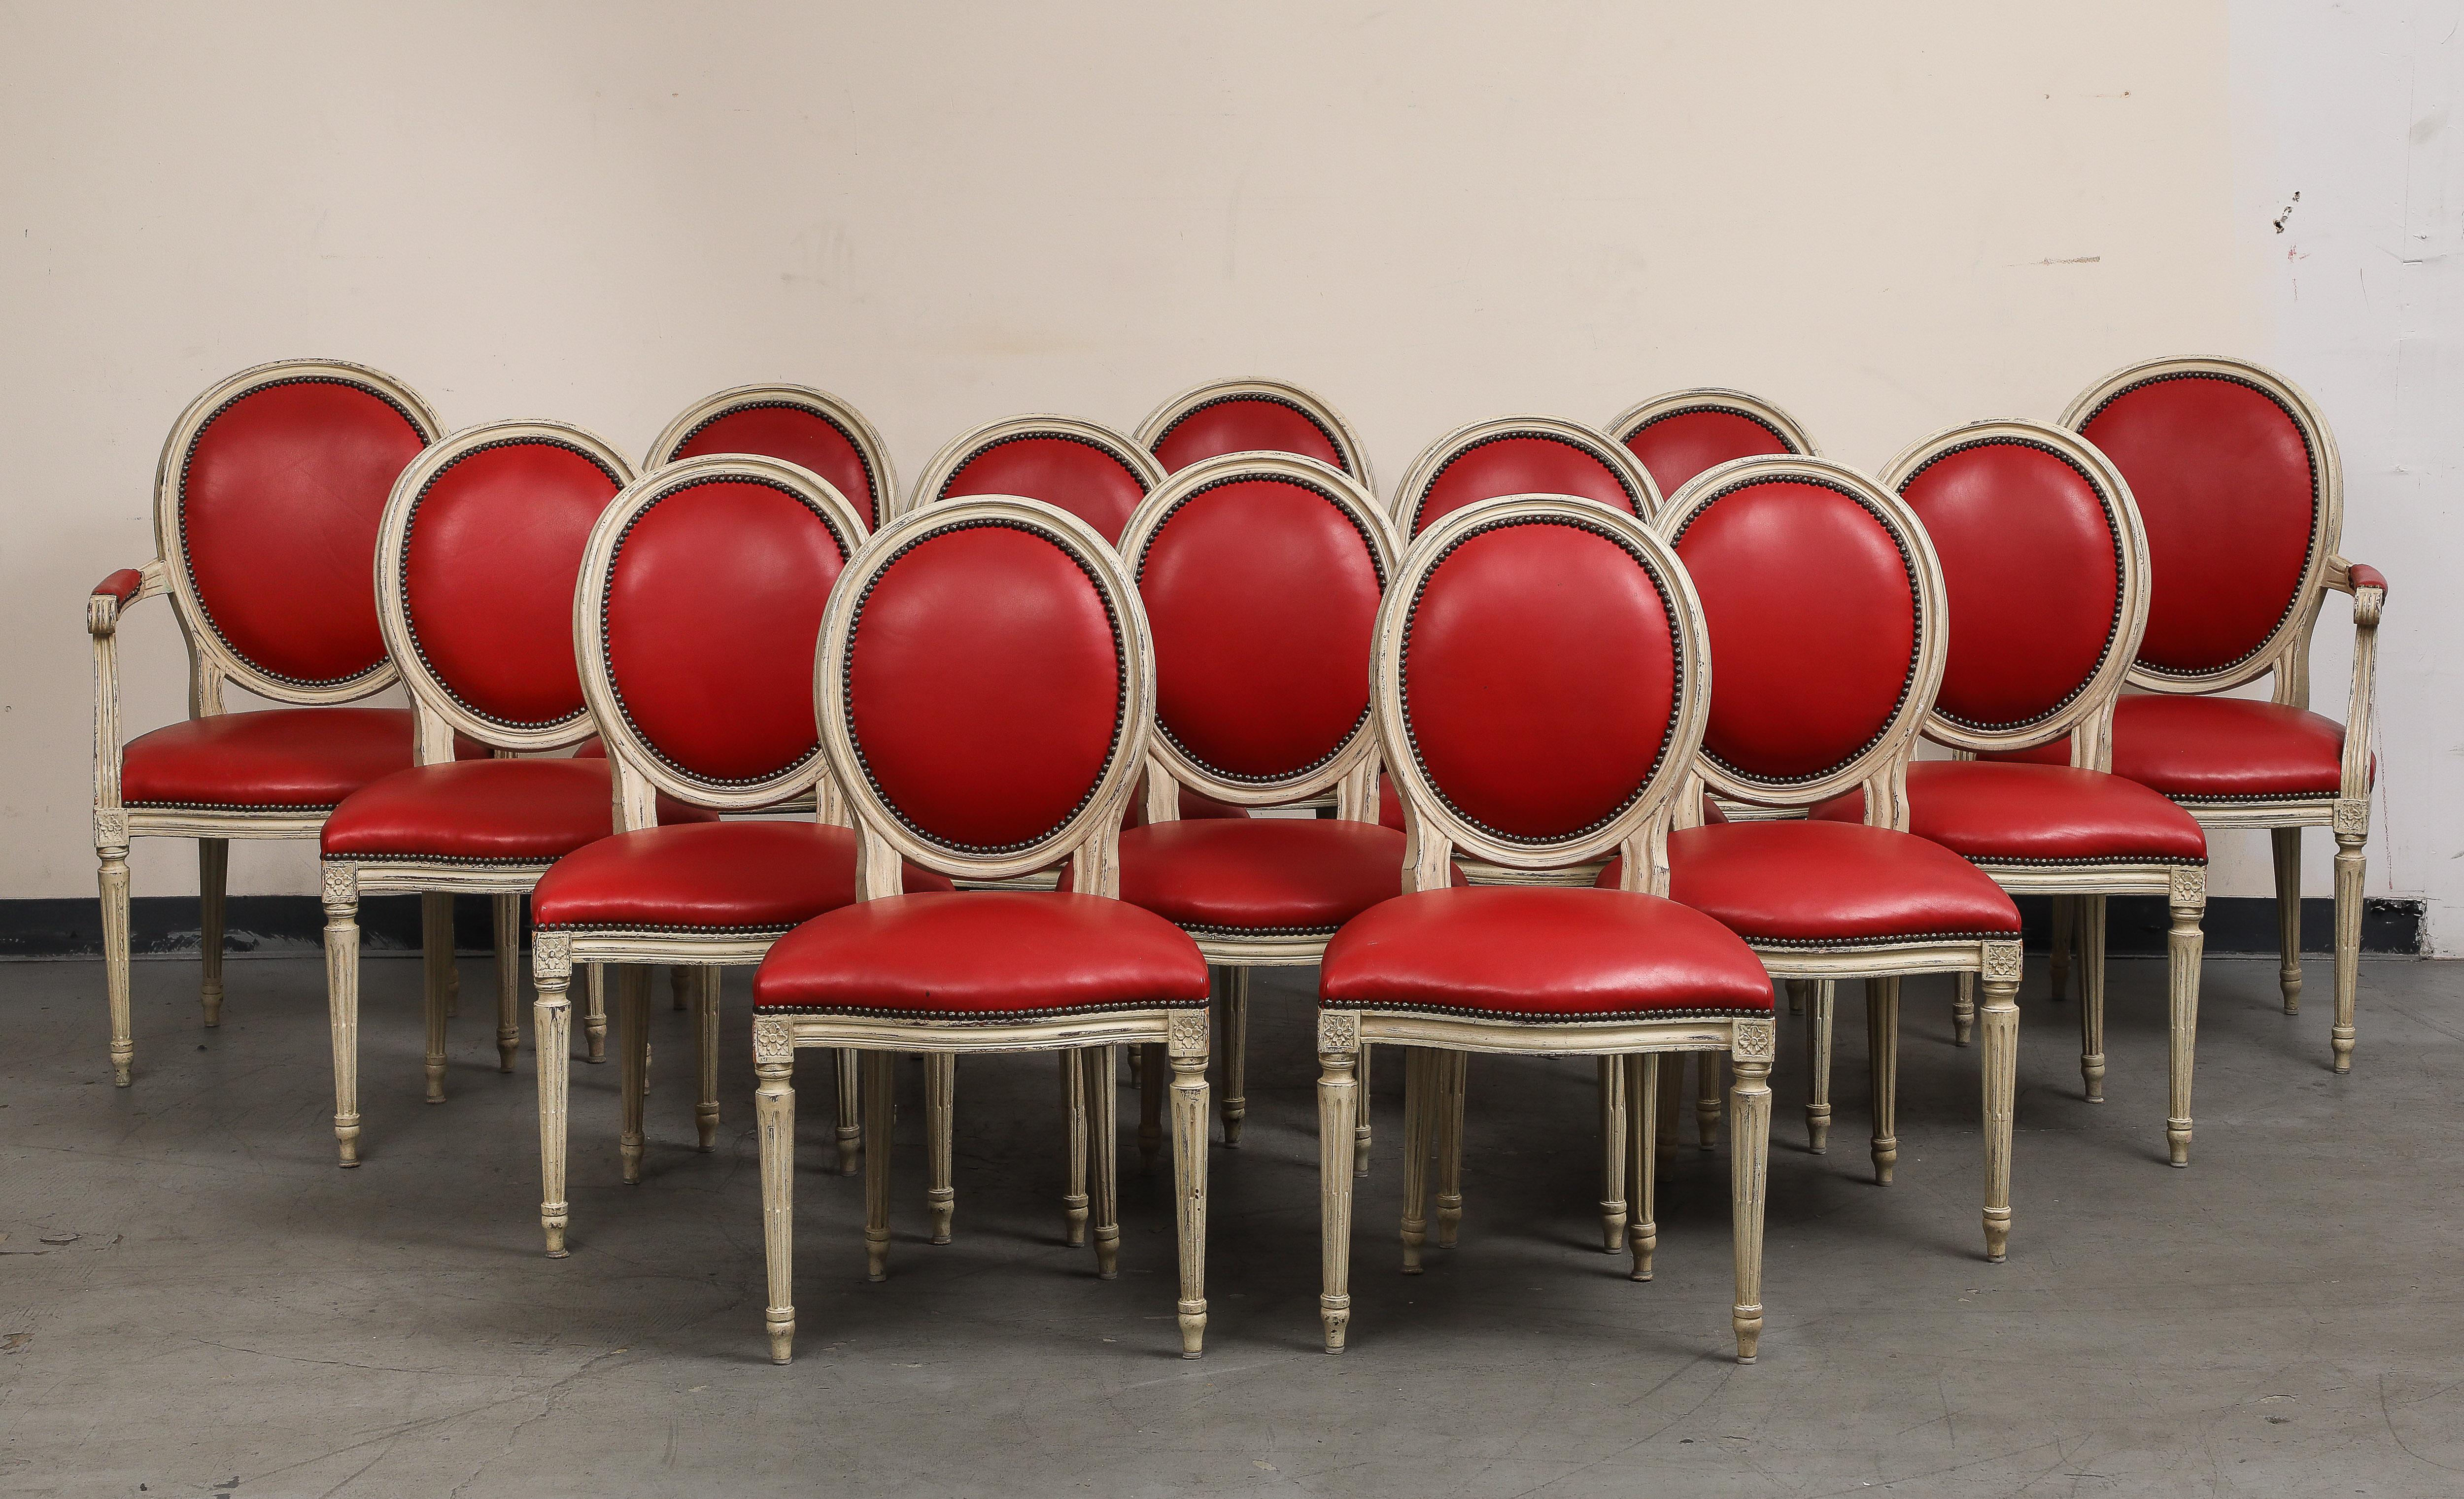 Groupe de quatorze (14) chaises de style Louis XVI en bois peint en grisaille avec sièges et dossiers en cuir rouge par Baker Furniture. Fin du 20e siècle. 
Marqué Baker Furniture en laiton sur la face inférieure. 

